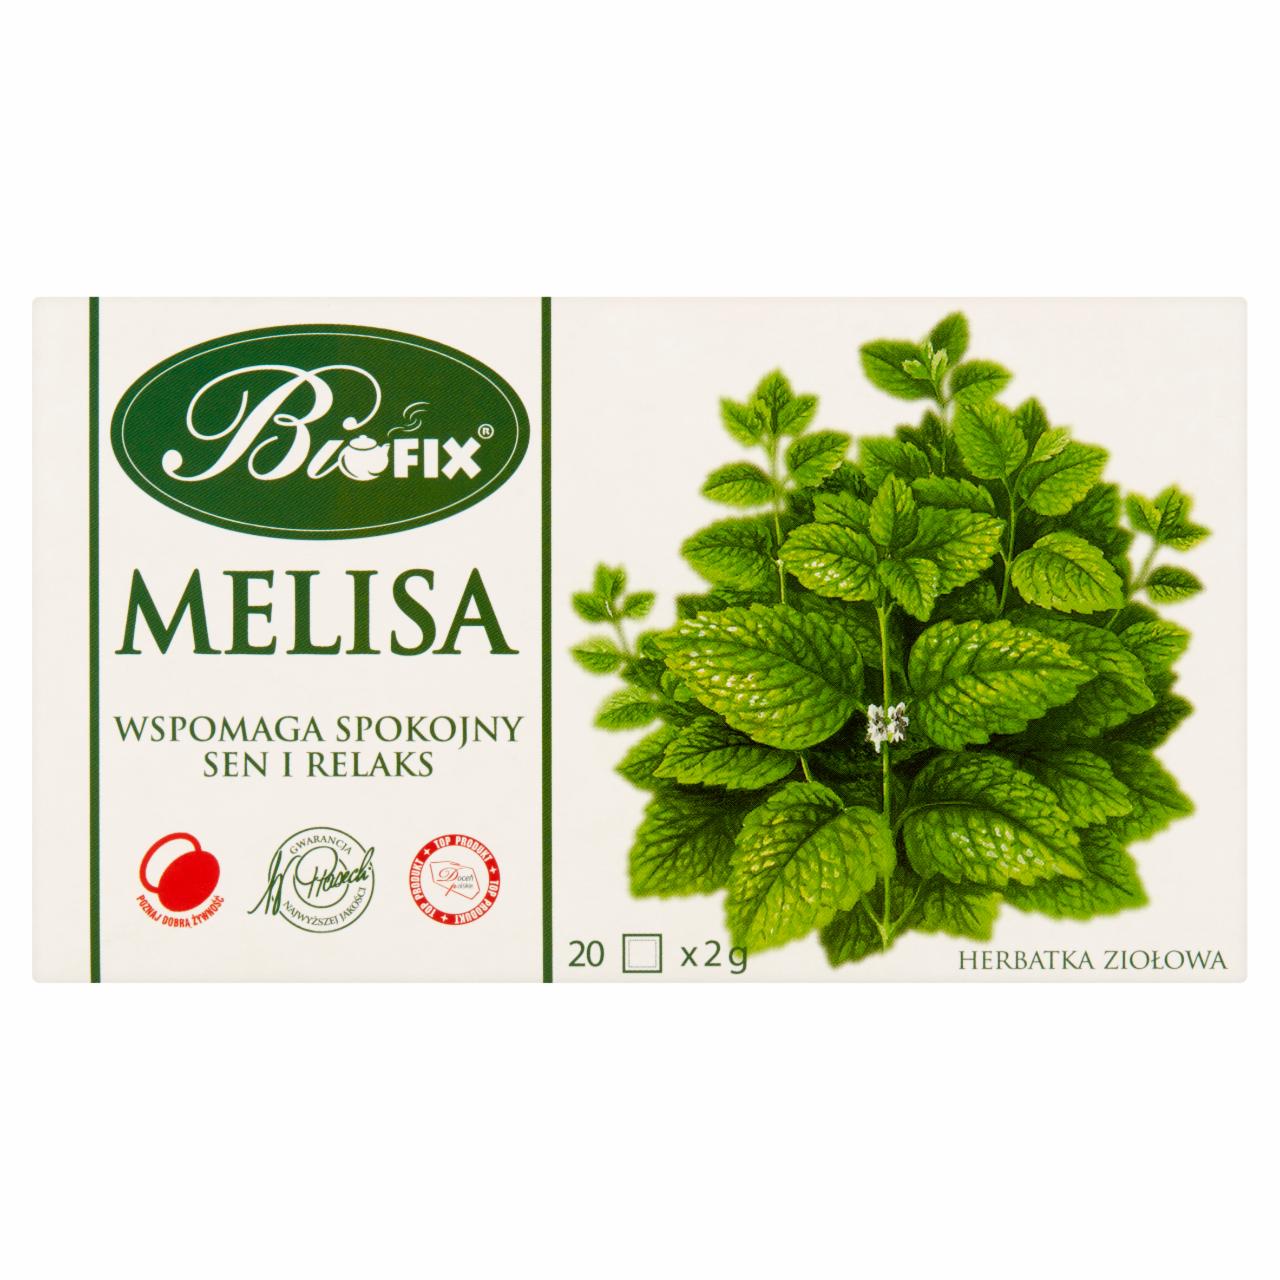 Zdjęcia - Bifix Herbatka ziołowa melisa 40 g (20 x 2 g)